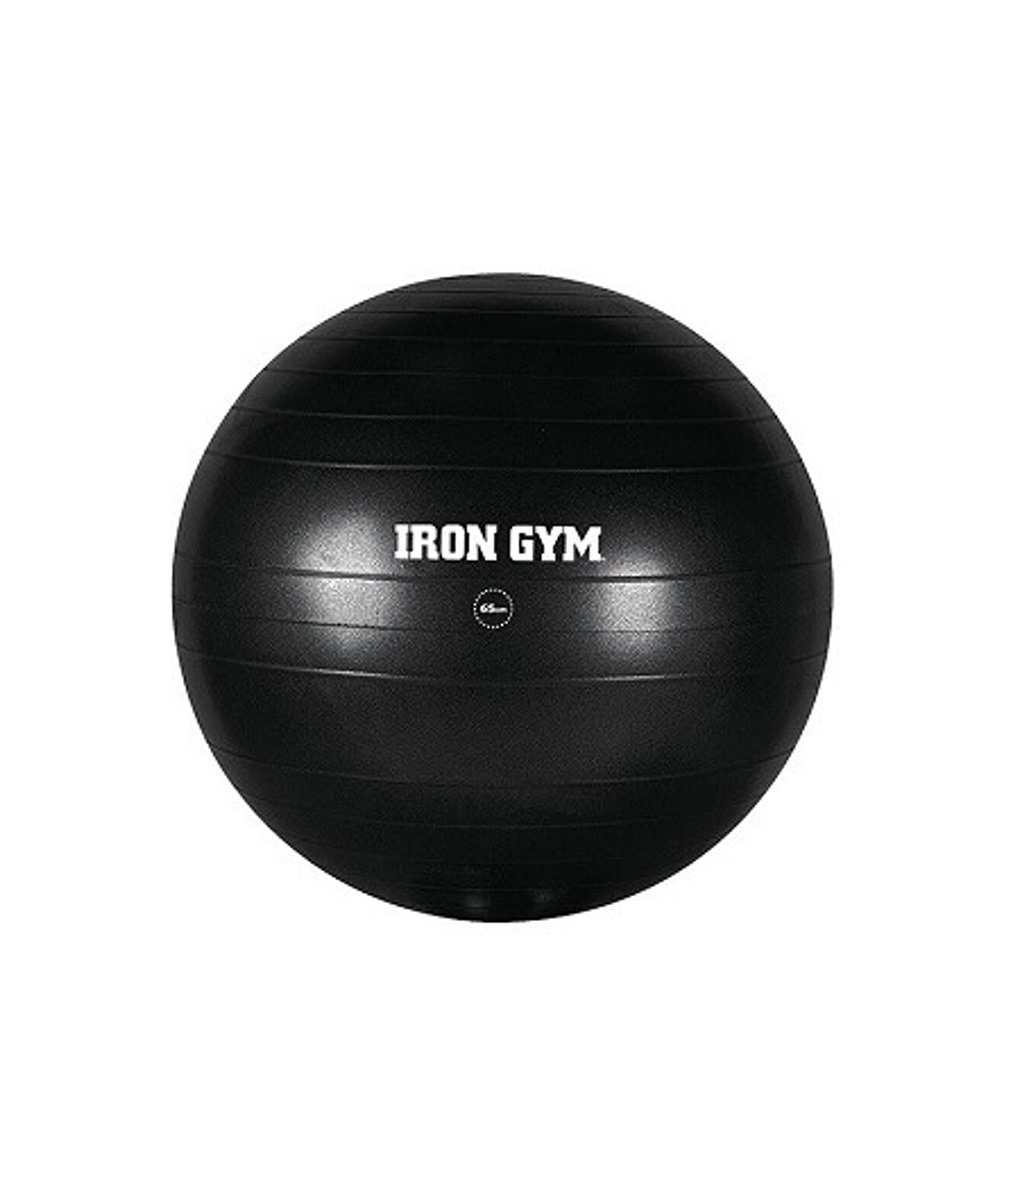 Iron Gym Exercise Ball 65 Cm Pilates Topu